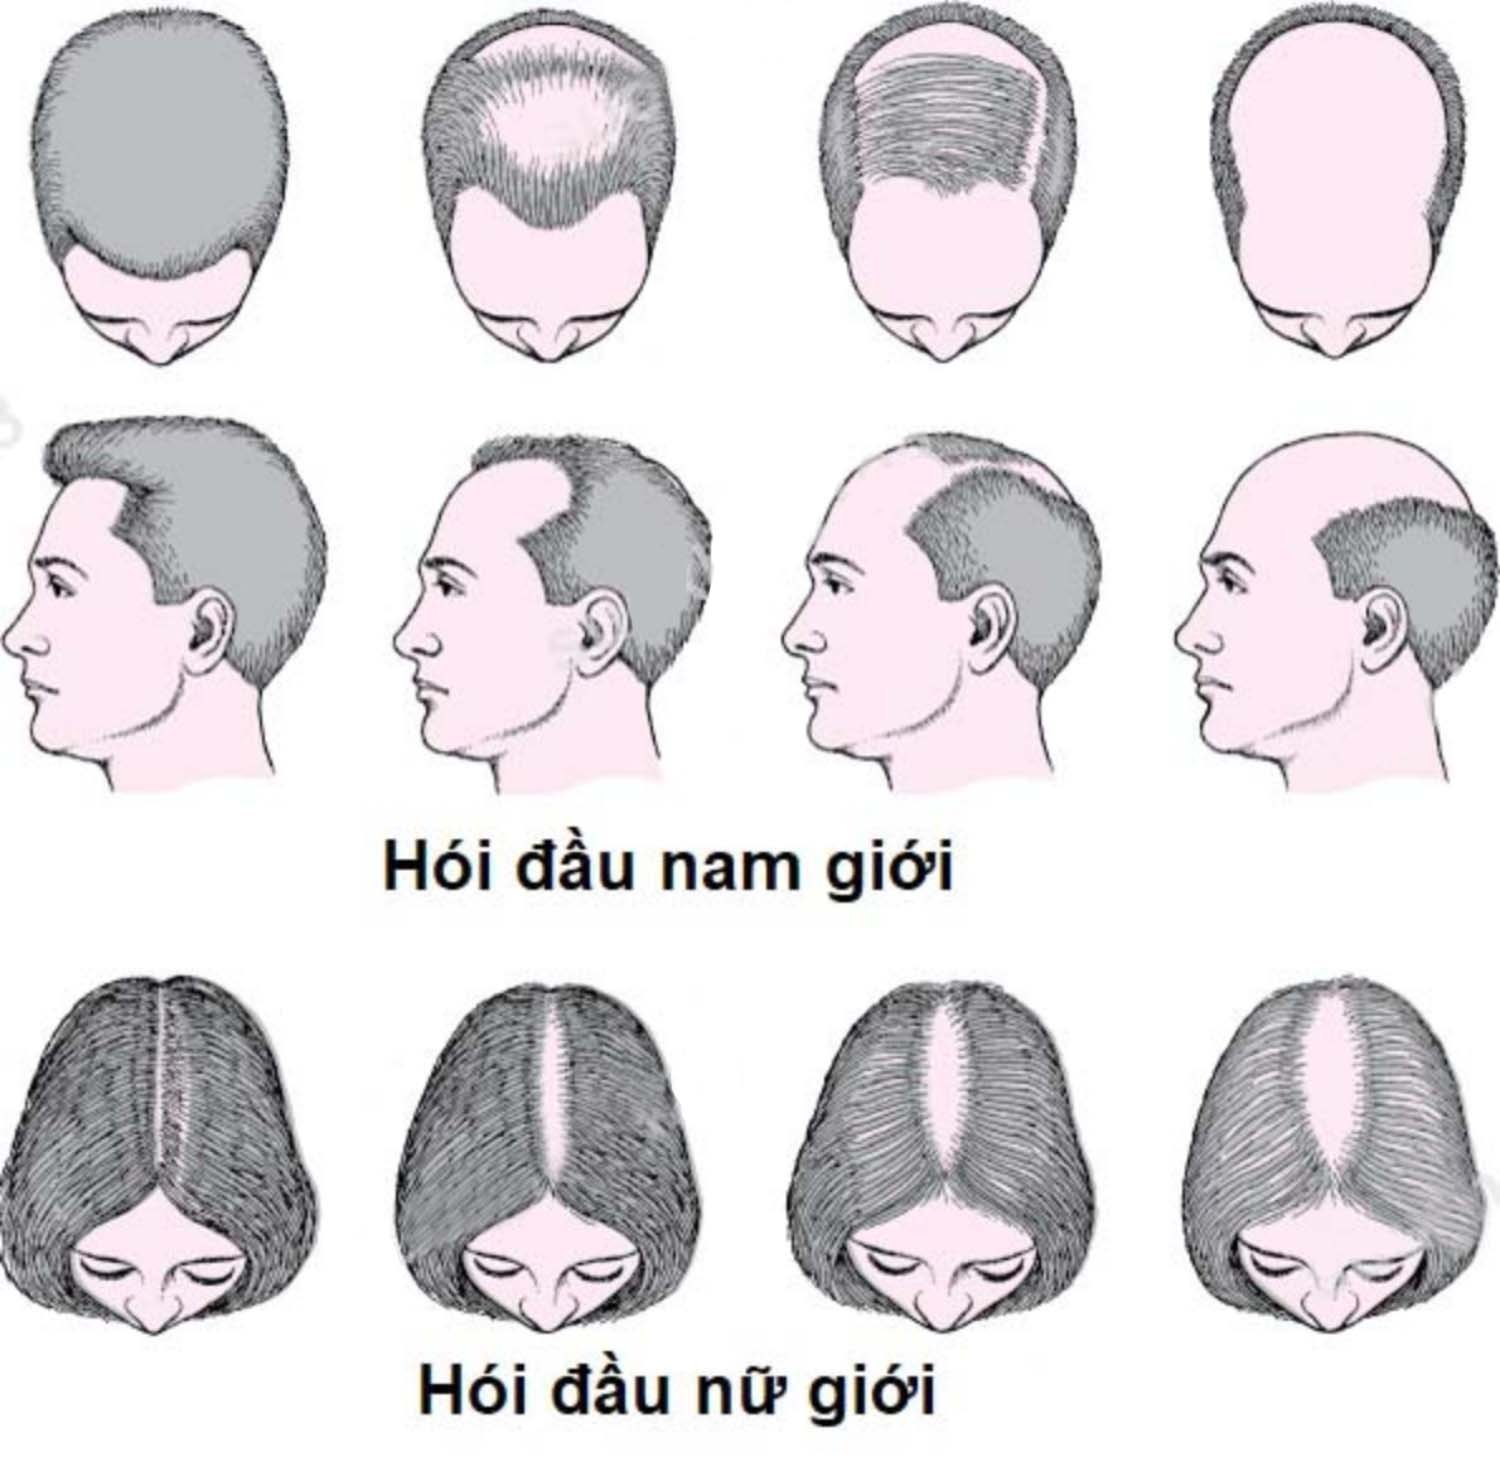 Các dạng hói đầu ở nam và nữ